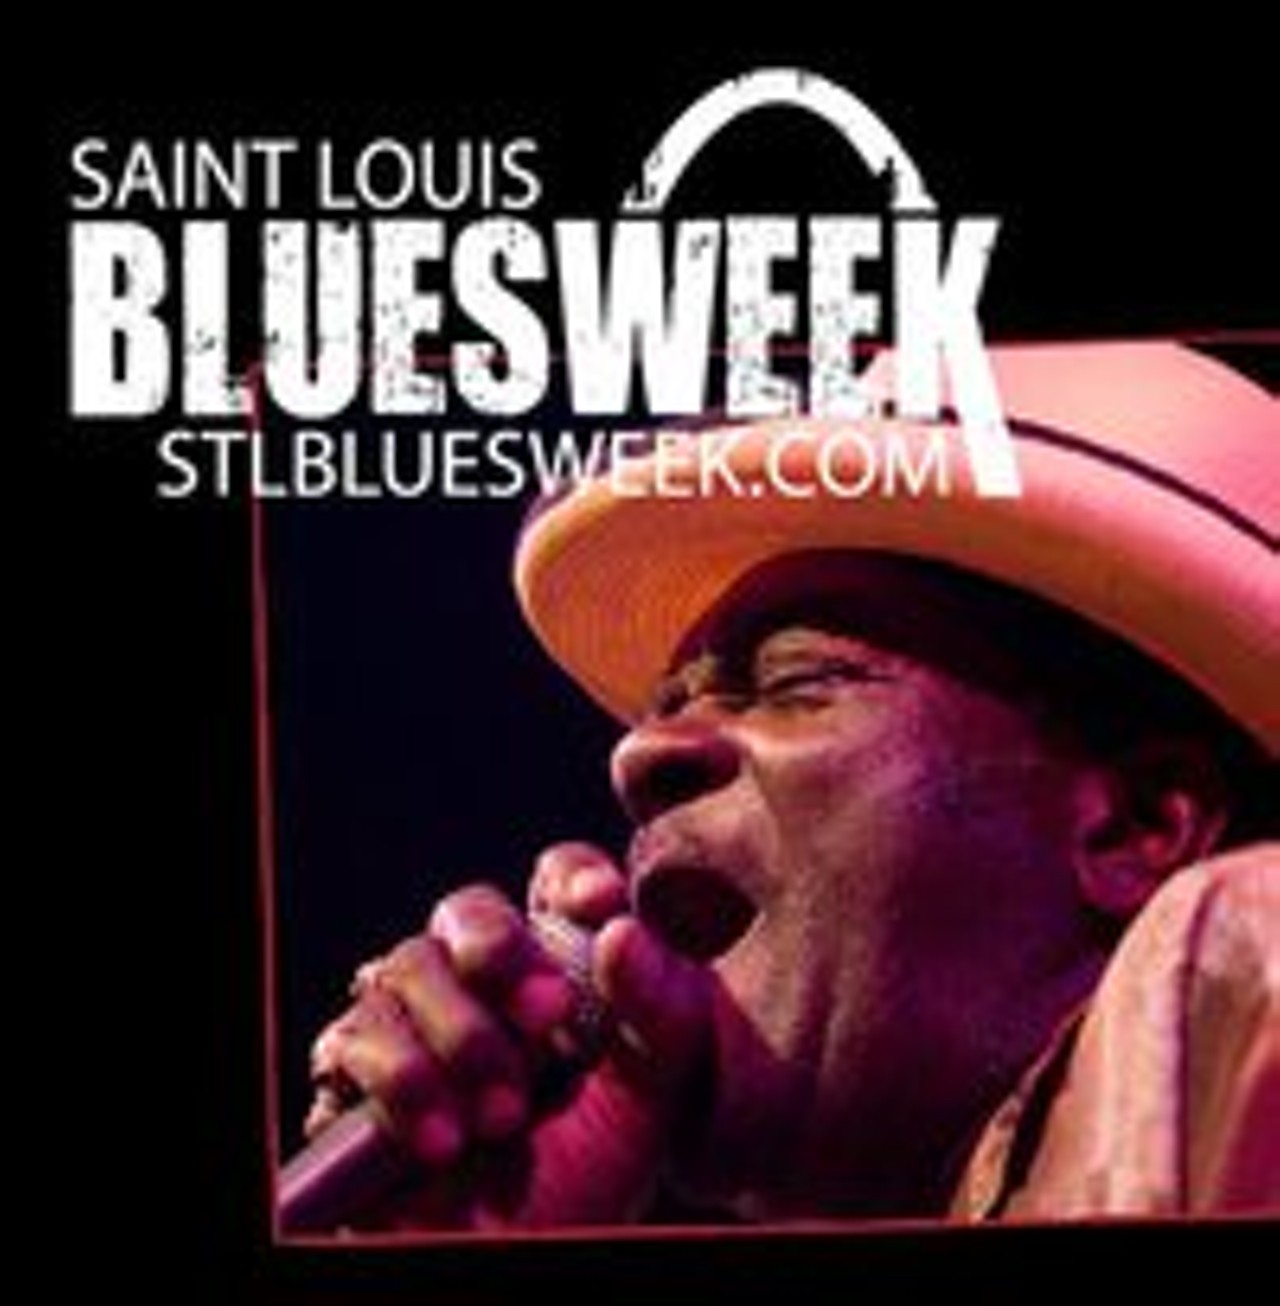 St. Louis Blues Week Festival